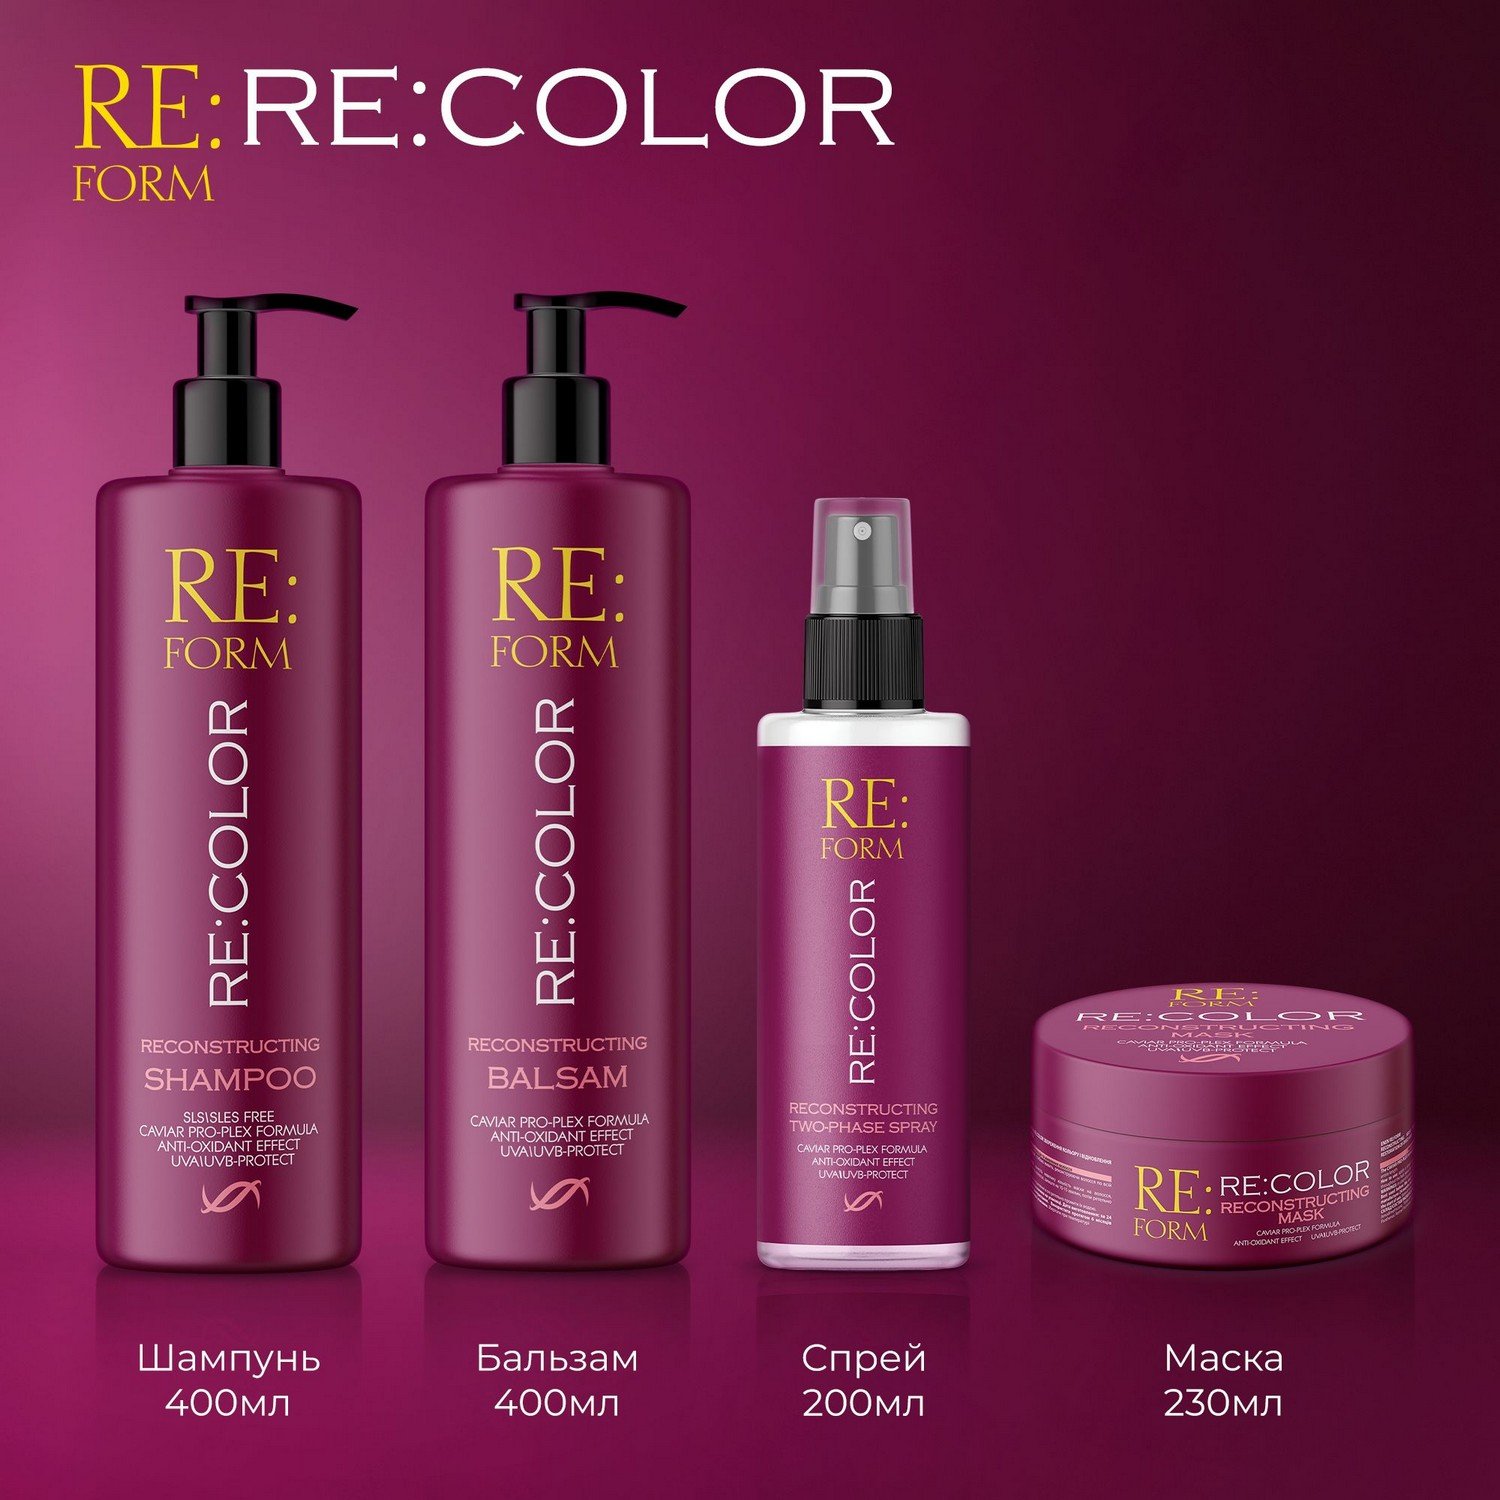 Реконструирующий двухфазный спрей Re:form Re:color Сохранение цвета и восстановление окрашенных волос, 200 мл - фото 9